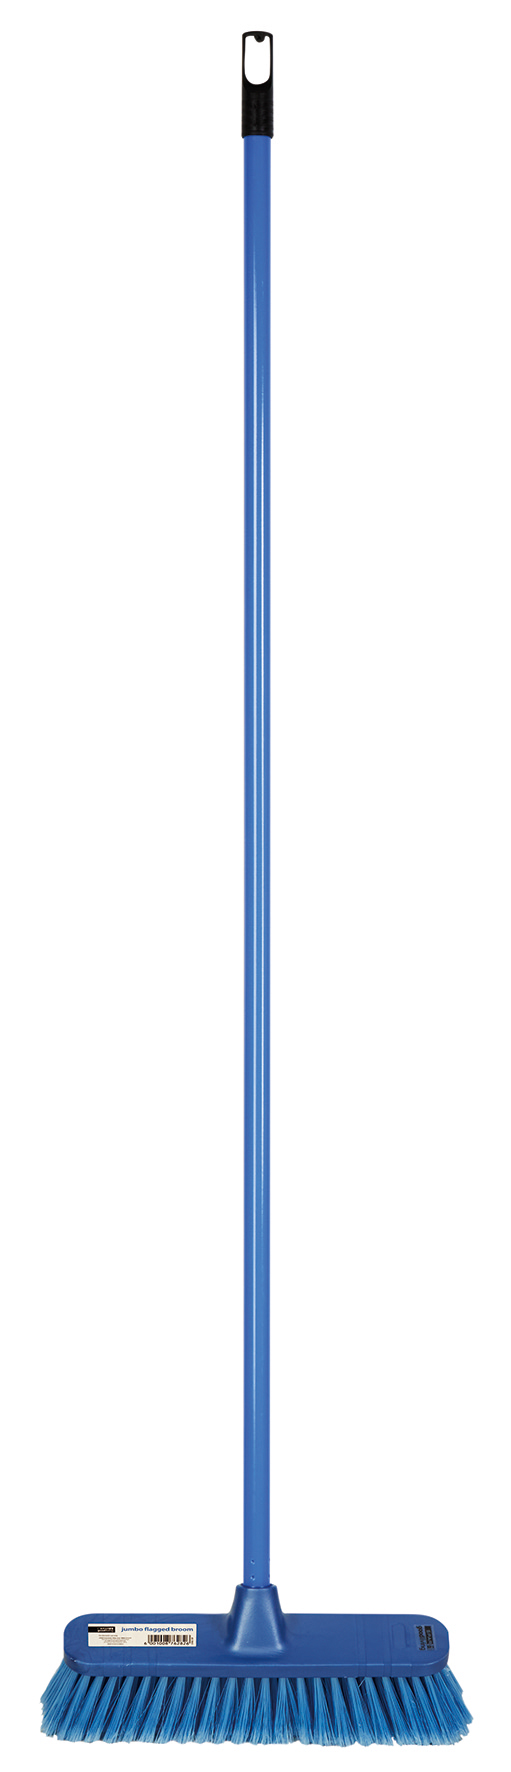 jumbo flagged broom